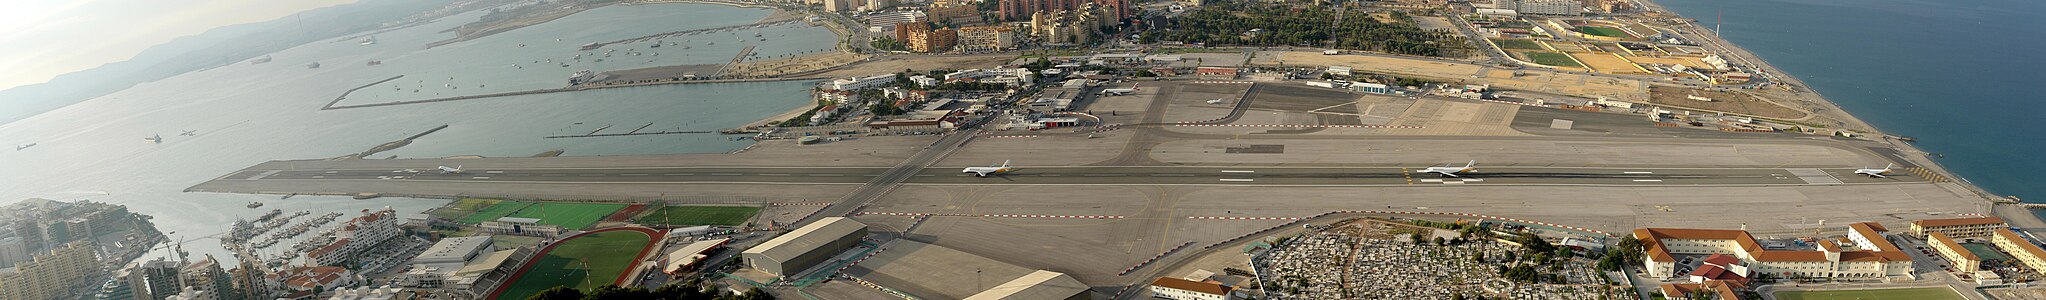 Cebelitarık Havalimanı'ndan kalkmakta olan Monarch Airlines'e ait Airbus A320 uçağının kalkışının çeşitli aşamalarını gösteren kompozit resmi. Resmin ortasında Cebelitarık ile İspanya ana toprağını birbirine bağlayan tek yol olan Winston Churchill Avenue'nün pisti kestiği nokta görülmektedir.(18 Eylül 2007). (Üreten: Michael F. Mehnert)